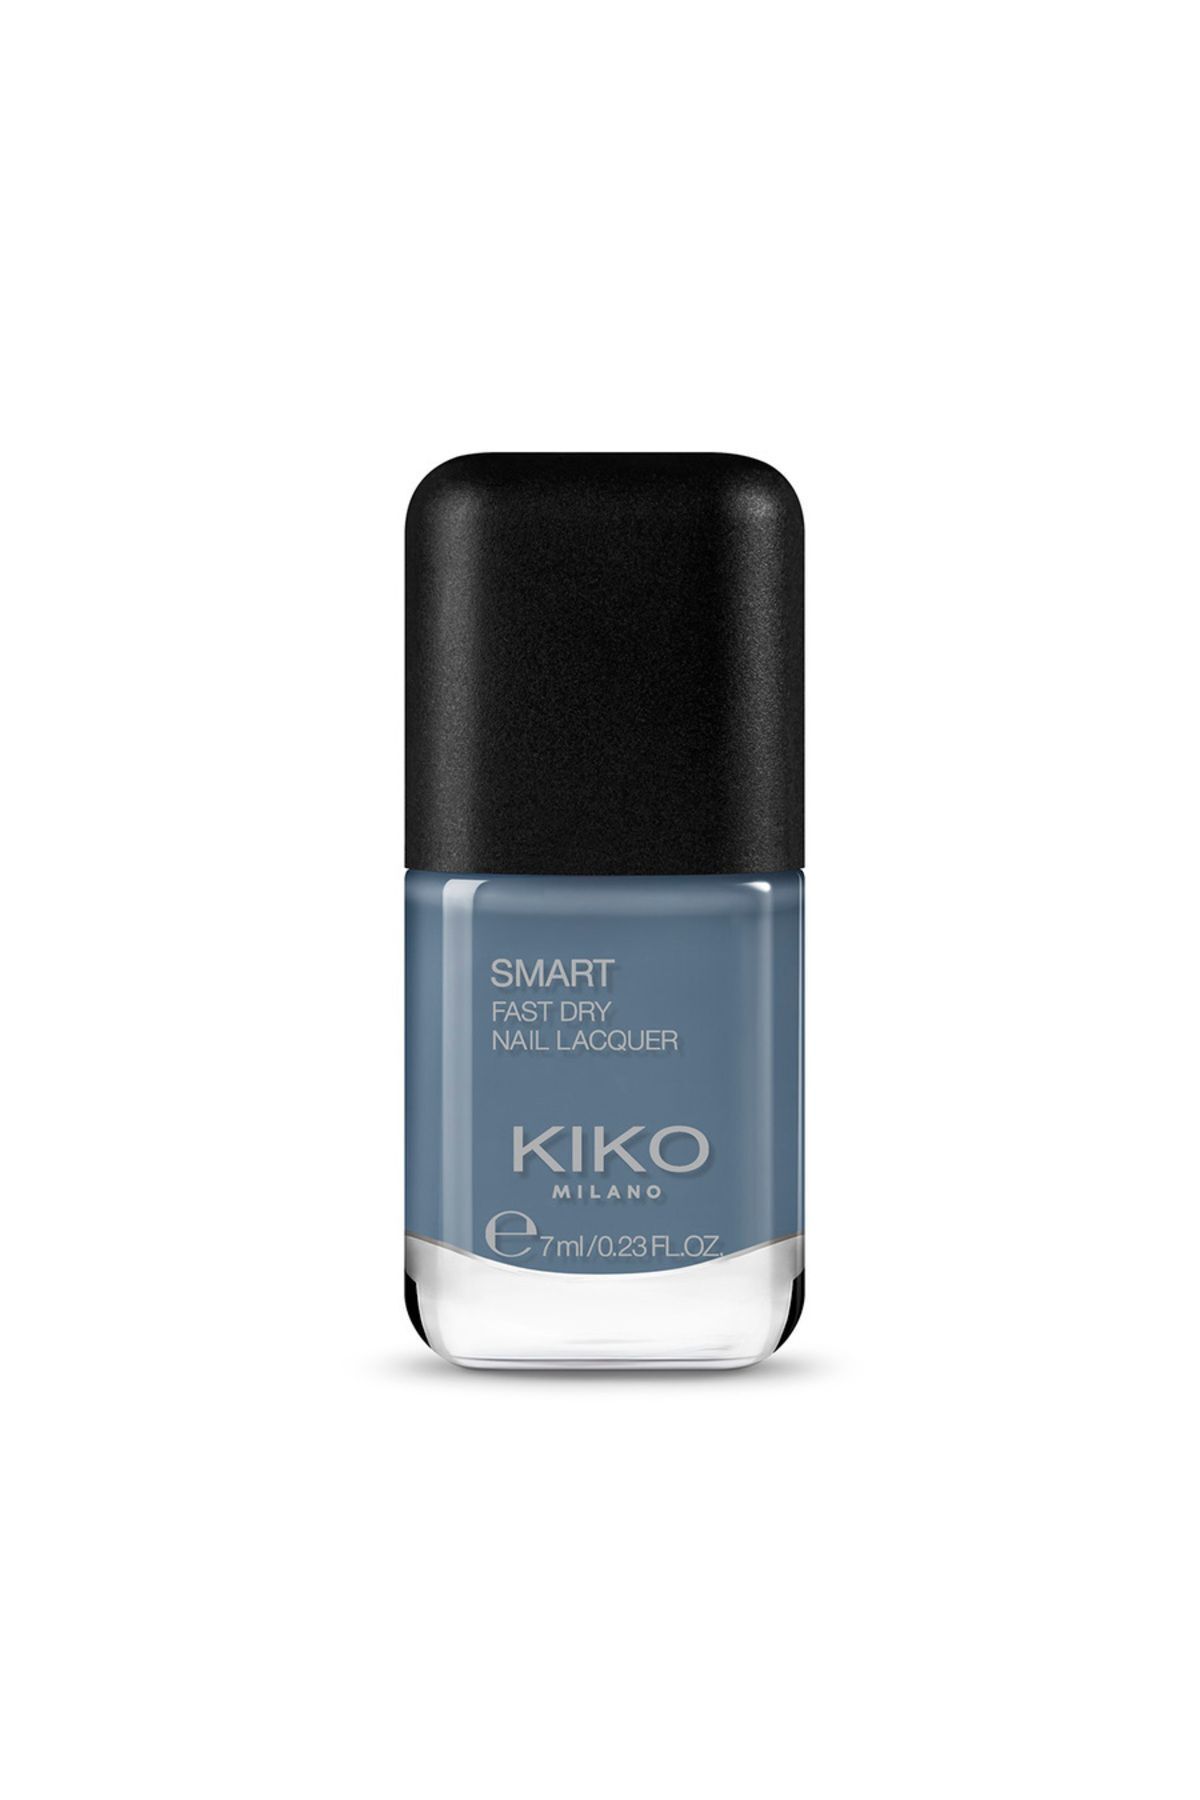 KIKO Oje - Smart Nail Lacquer 79 Denim Grey Blue